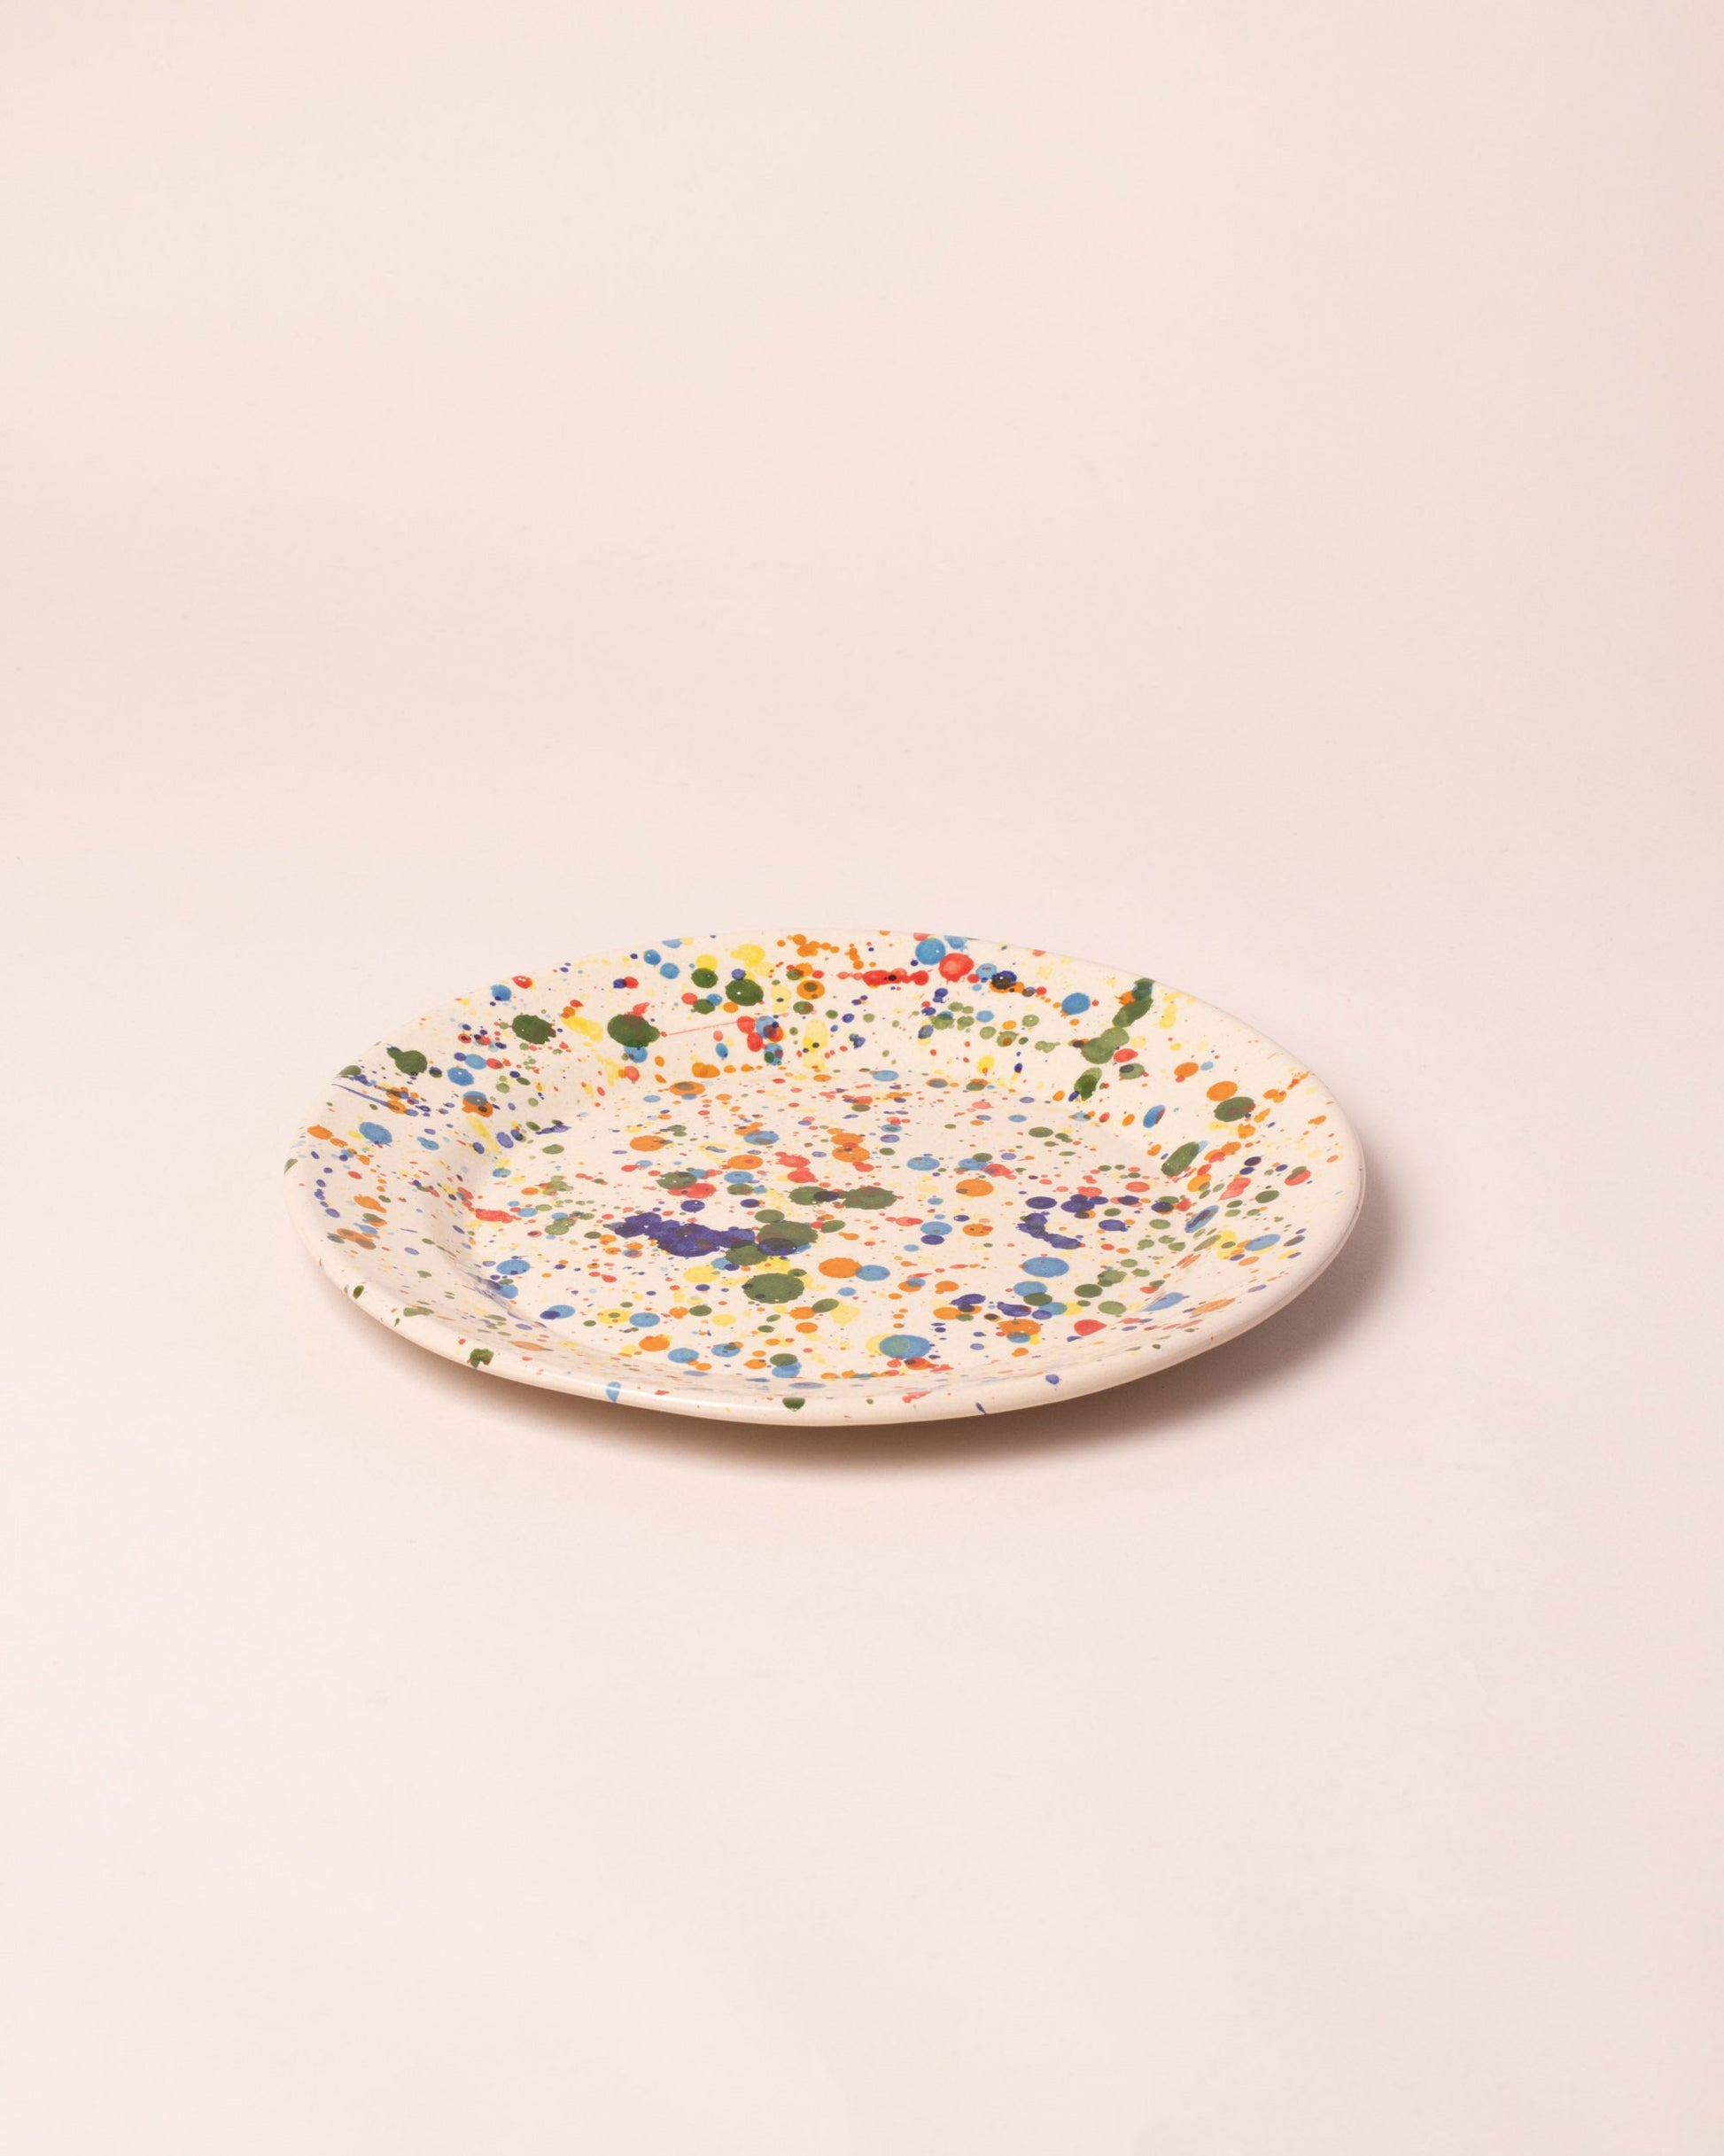 La Ceramica Vincenzo Del Monaco Colored Drops Large Dish on light color background.